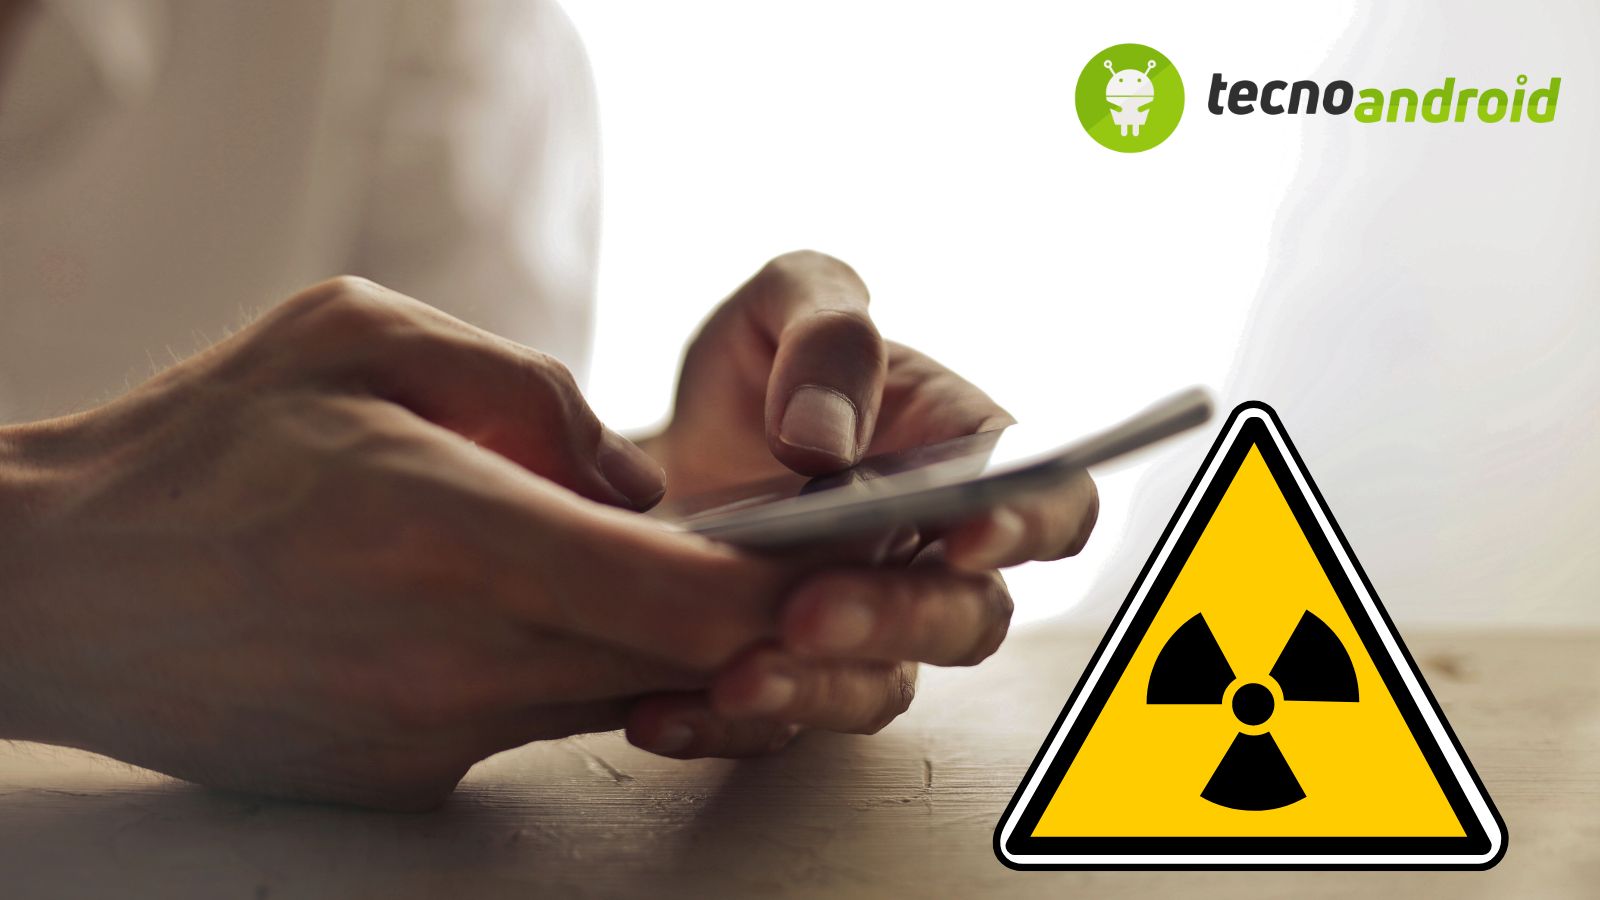 Pericolo: smartphone ritirati dal mercato perché radioattivi